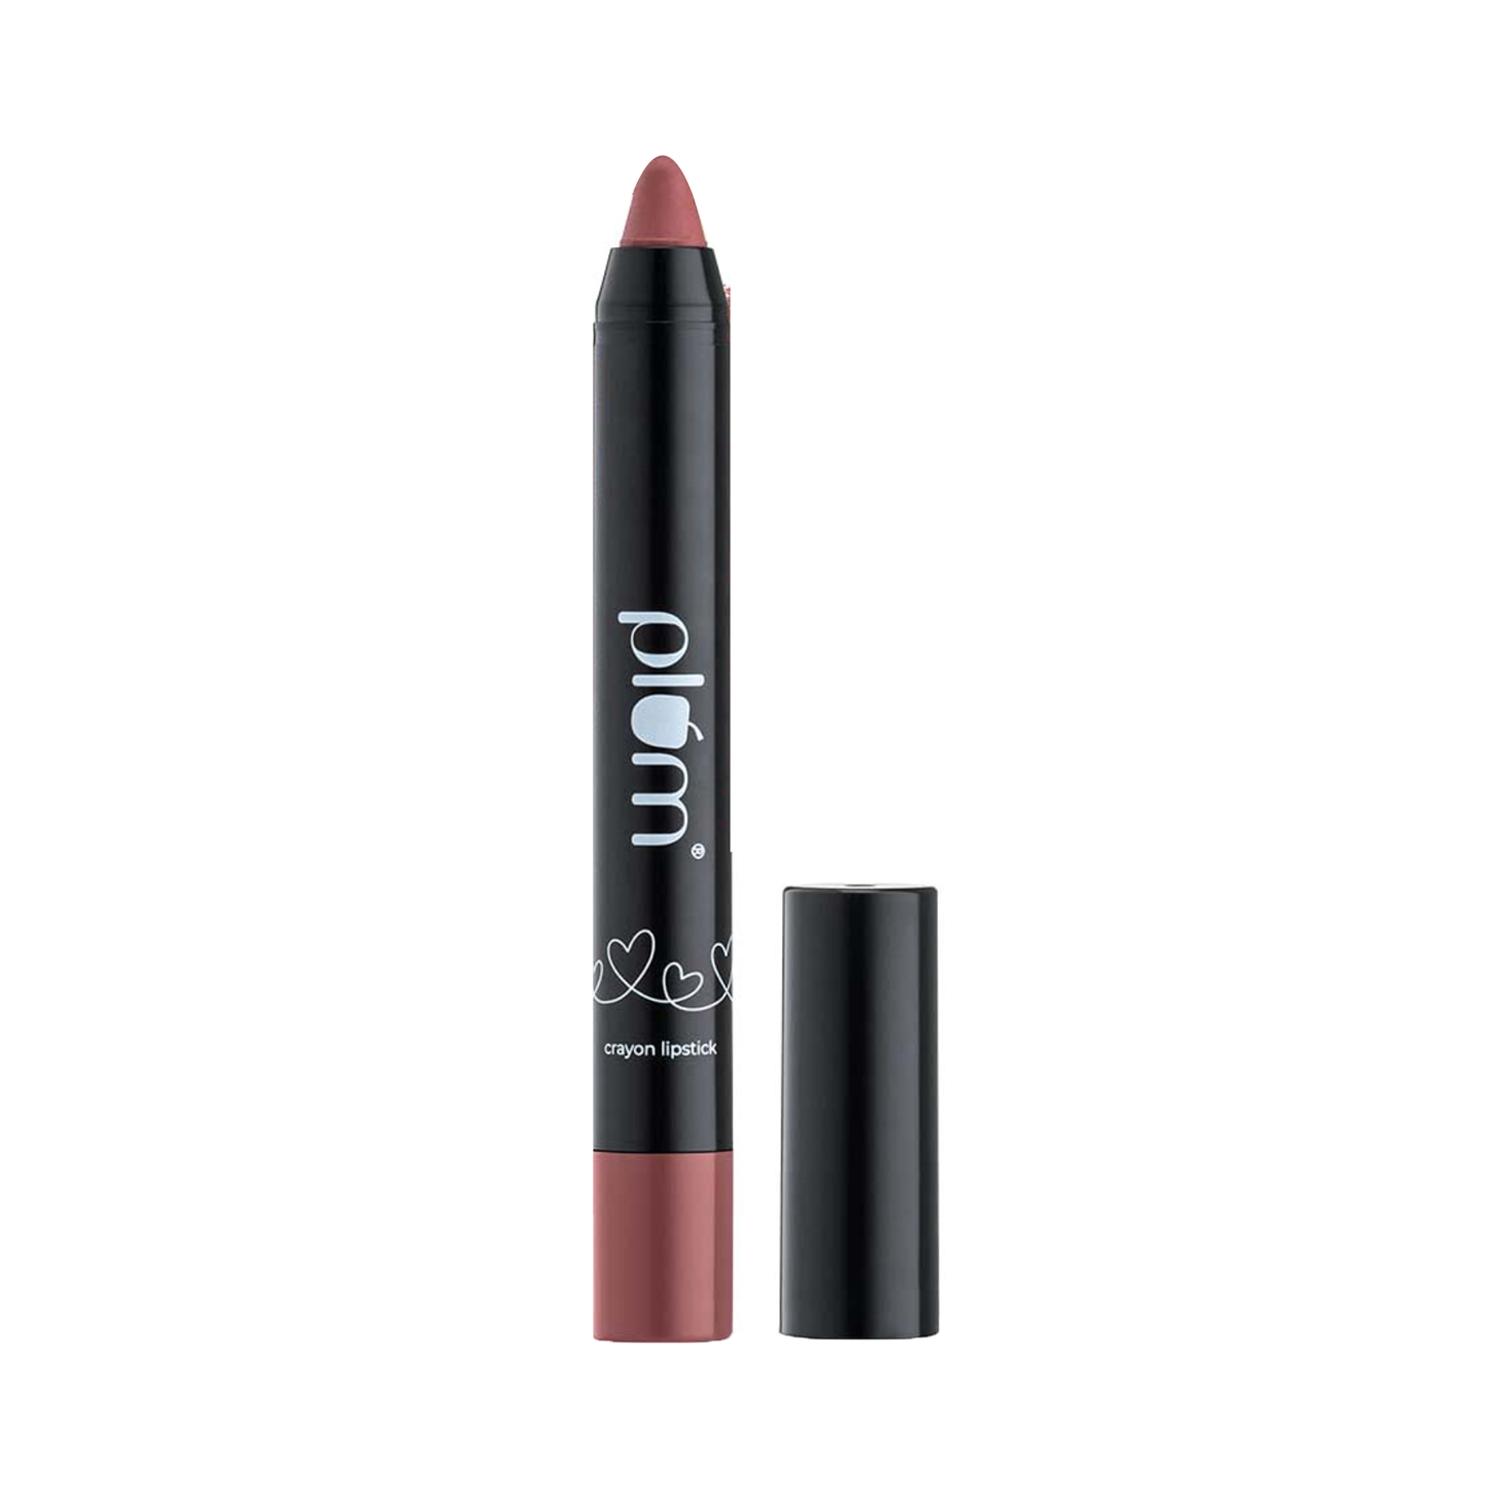 plum twist & go matte lip crayon - 124 witty in pink (1.8g)